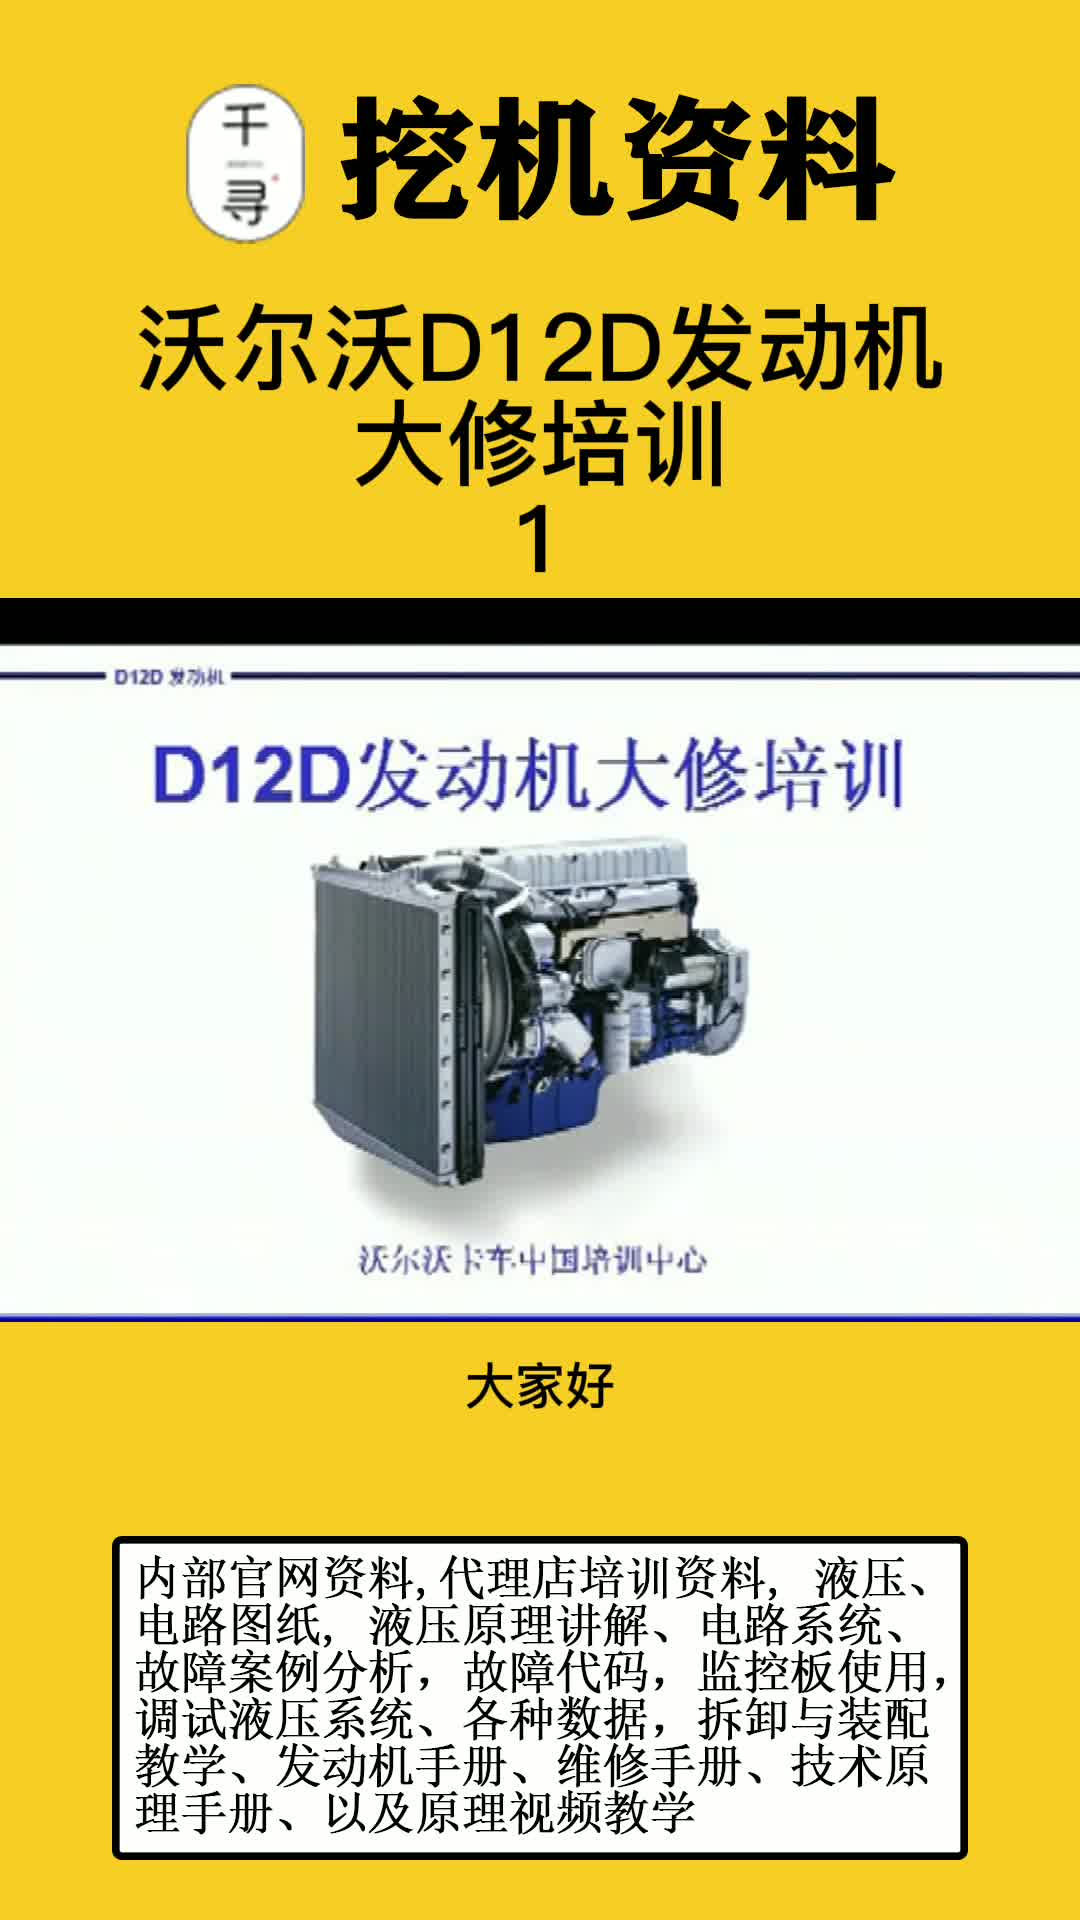 沃尔沃D12D发动机大修培训视频-1